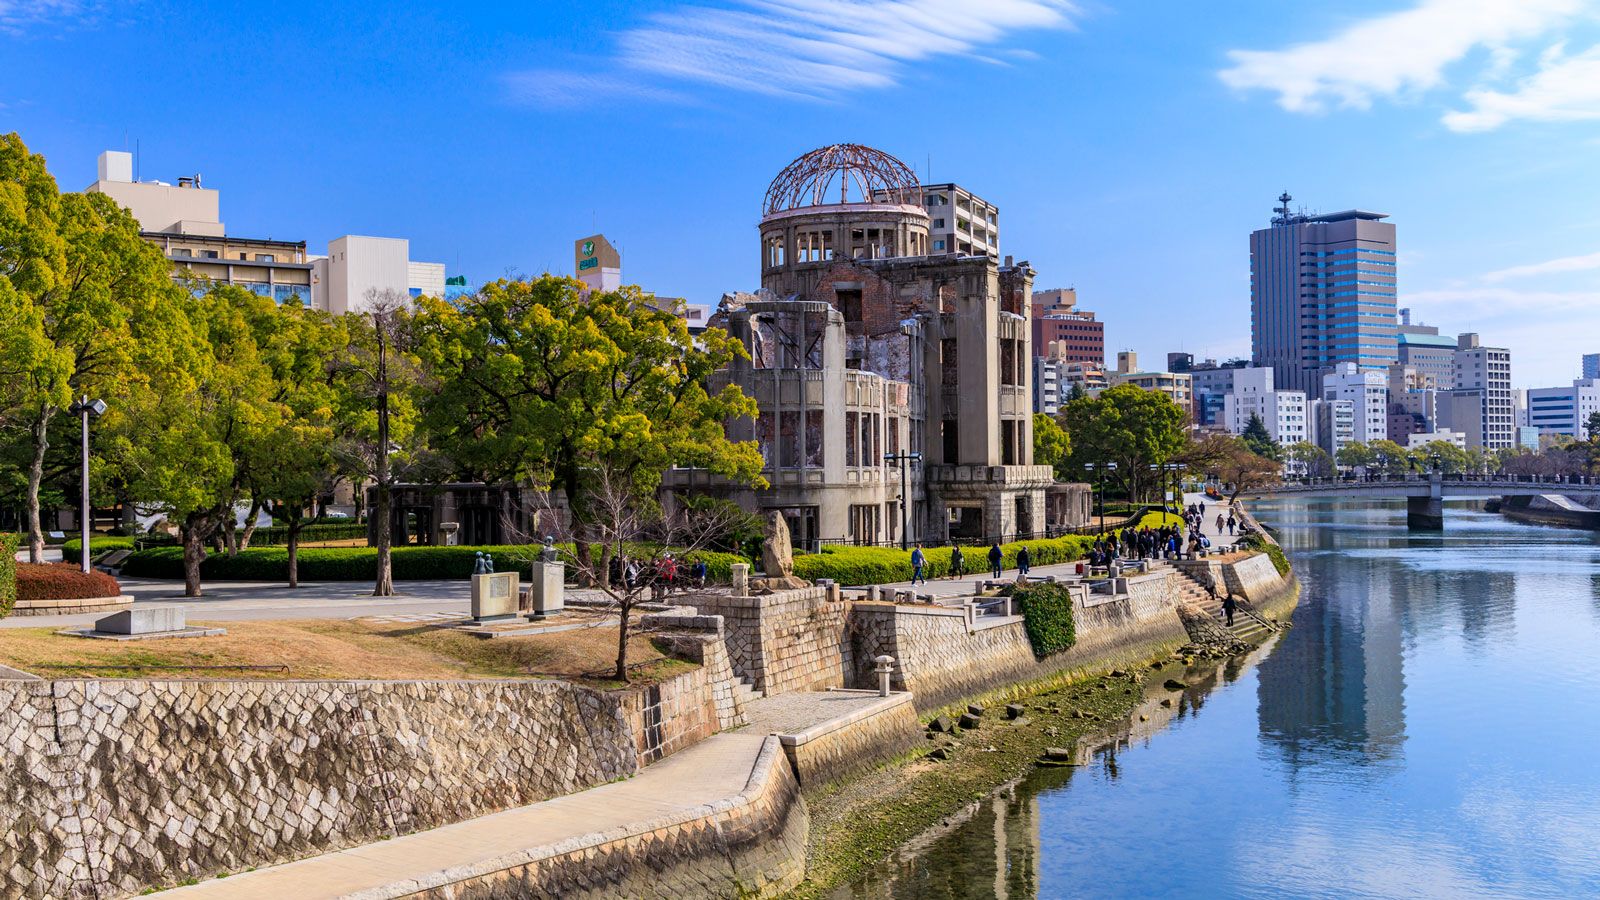 広島の｢平和活動｣に感じる微妙な矛盾と残念さ 原爆と核兵器廃絶は別問題なのか | 国内政治 | 東洋経済オンライン